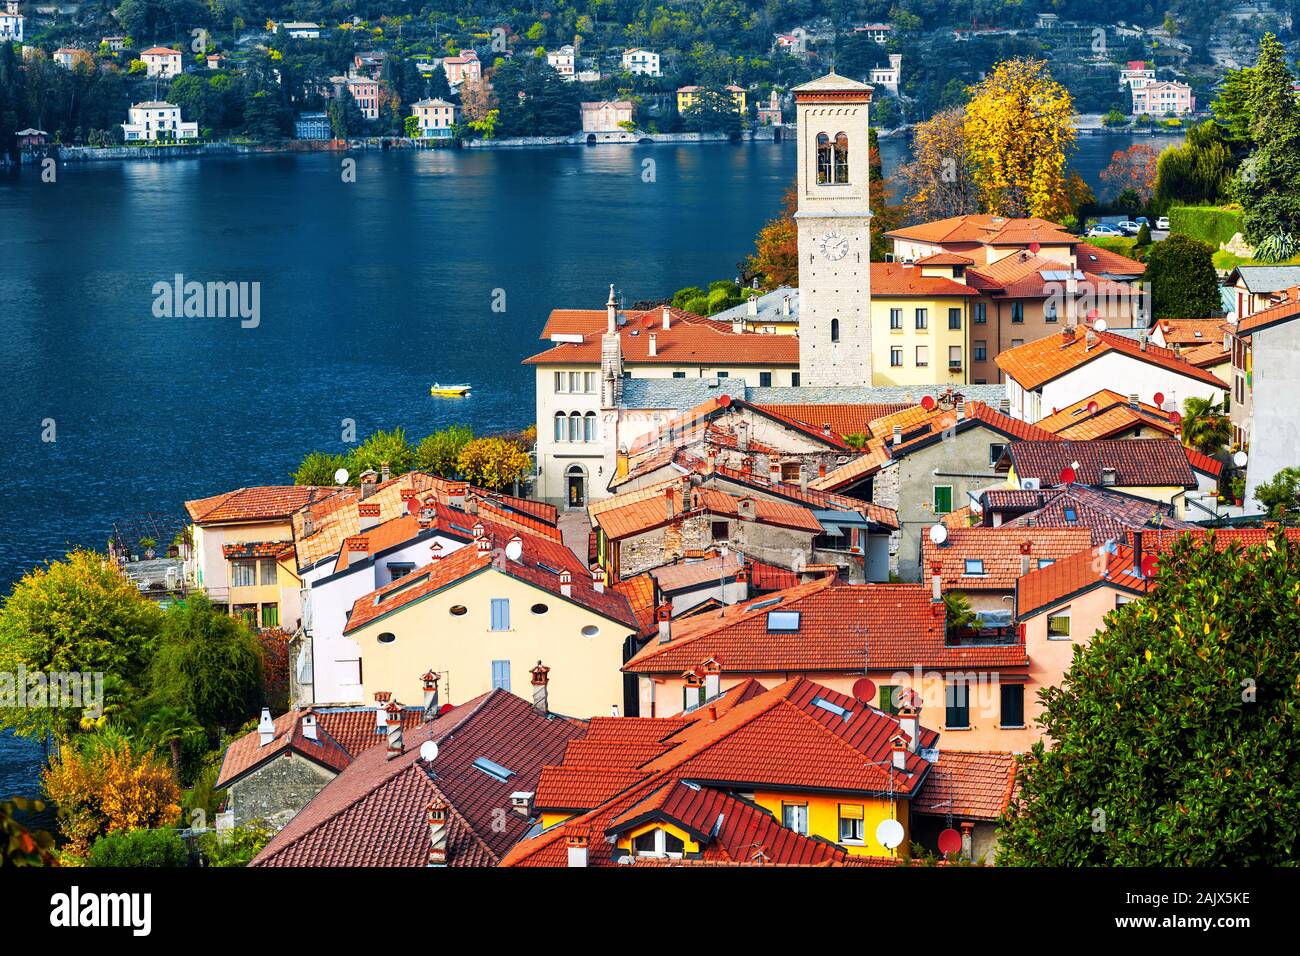 Le lac de Côme, Lombardie, Italie, vue sur les toits rouges du village pittoresque de Torno. Lac de Côme est une destination de voyage populaires près de Milan. Banque D'Images